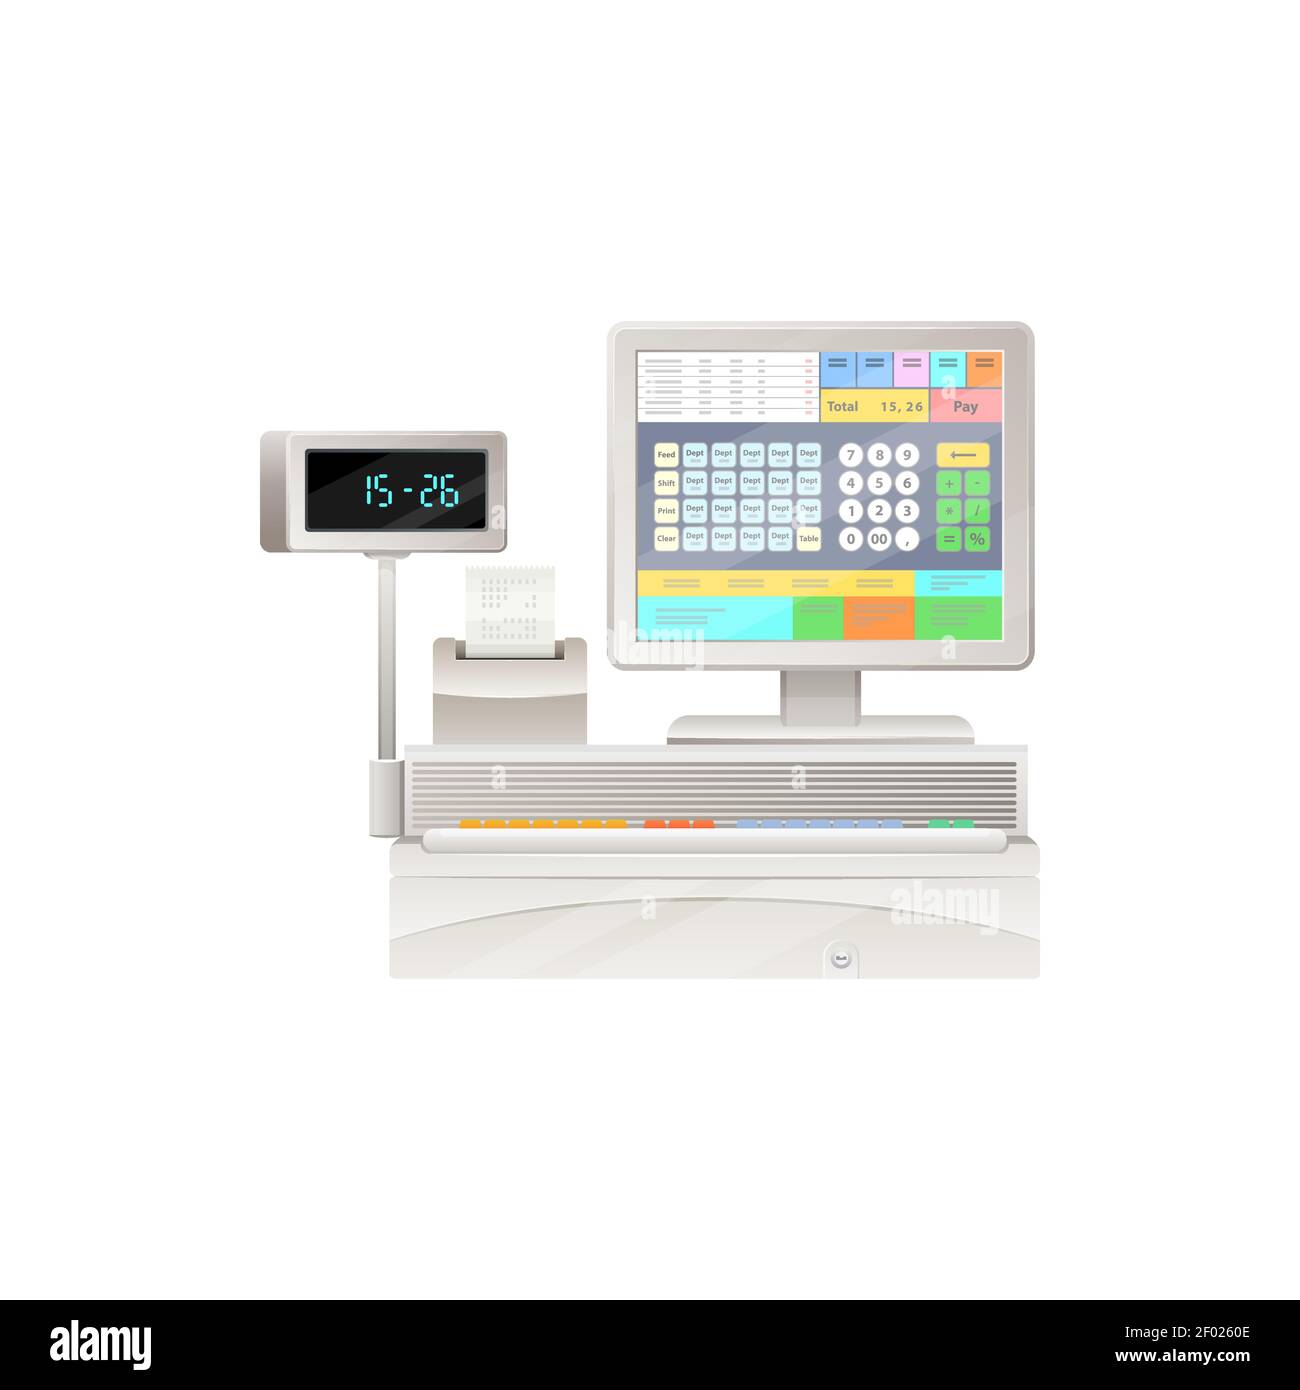 Bureau de caisse moderne avec écran tactile, caisse enregistreuse avec  imprimante de billets et affichage isolé des achats et de la machine  d'enregistrement des ventes. Cash r. Électronique Vector Image Vectorielle  Stock -